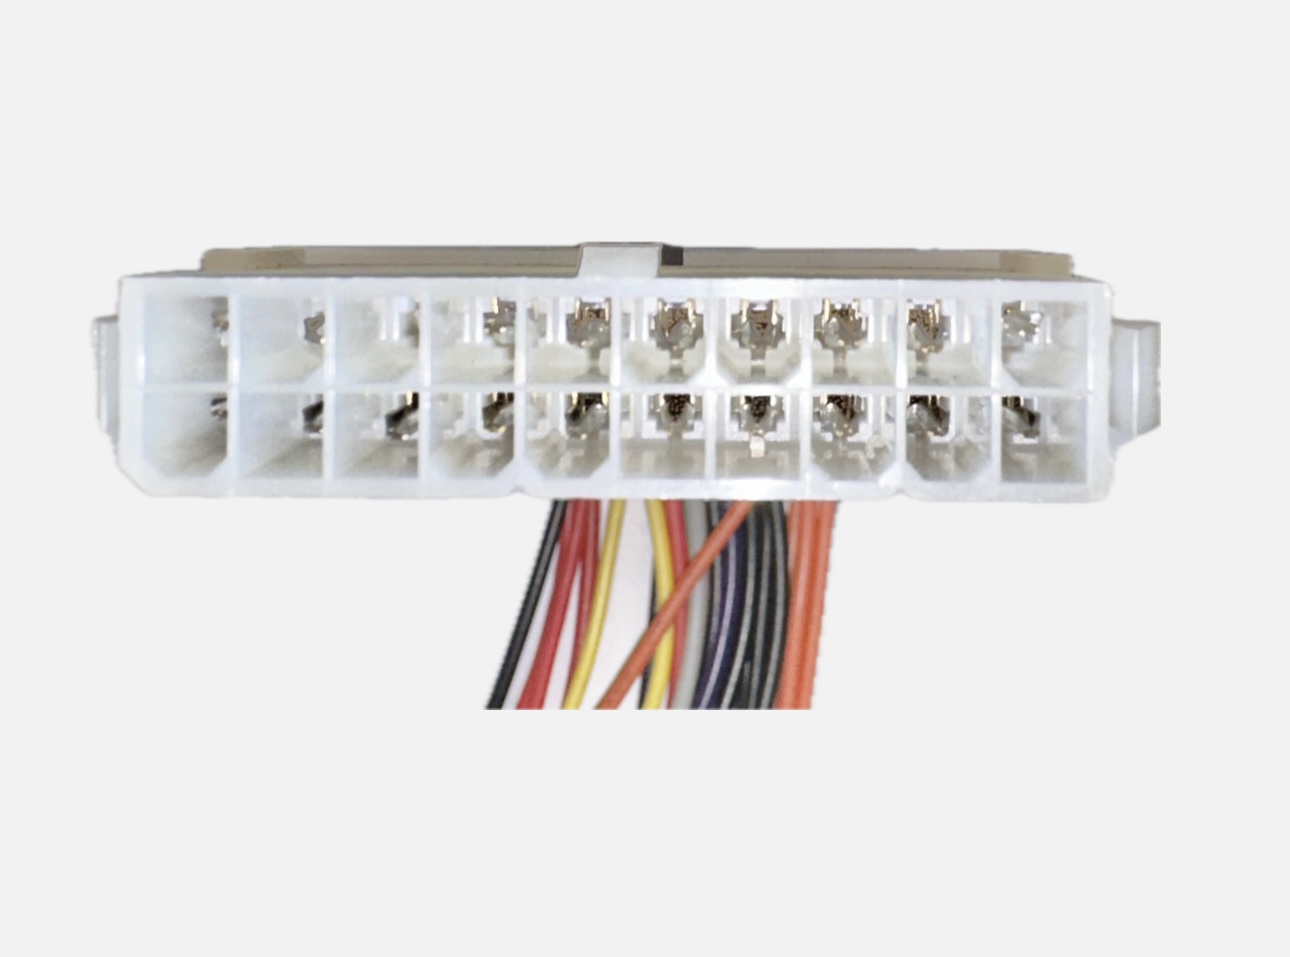 20cm - 20 auf 24 Pin ATX-Stromkabelverlängerung für Mainboards